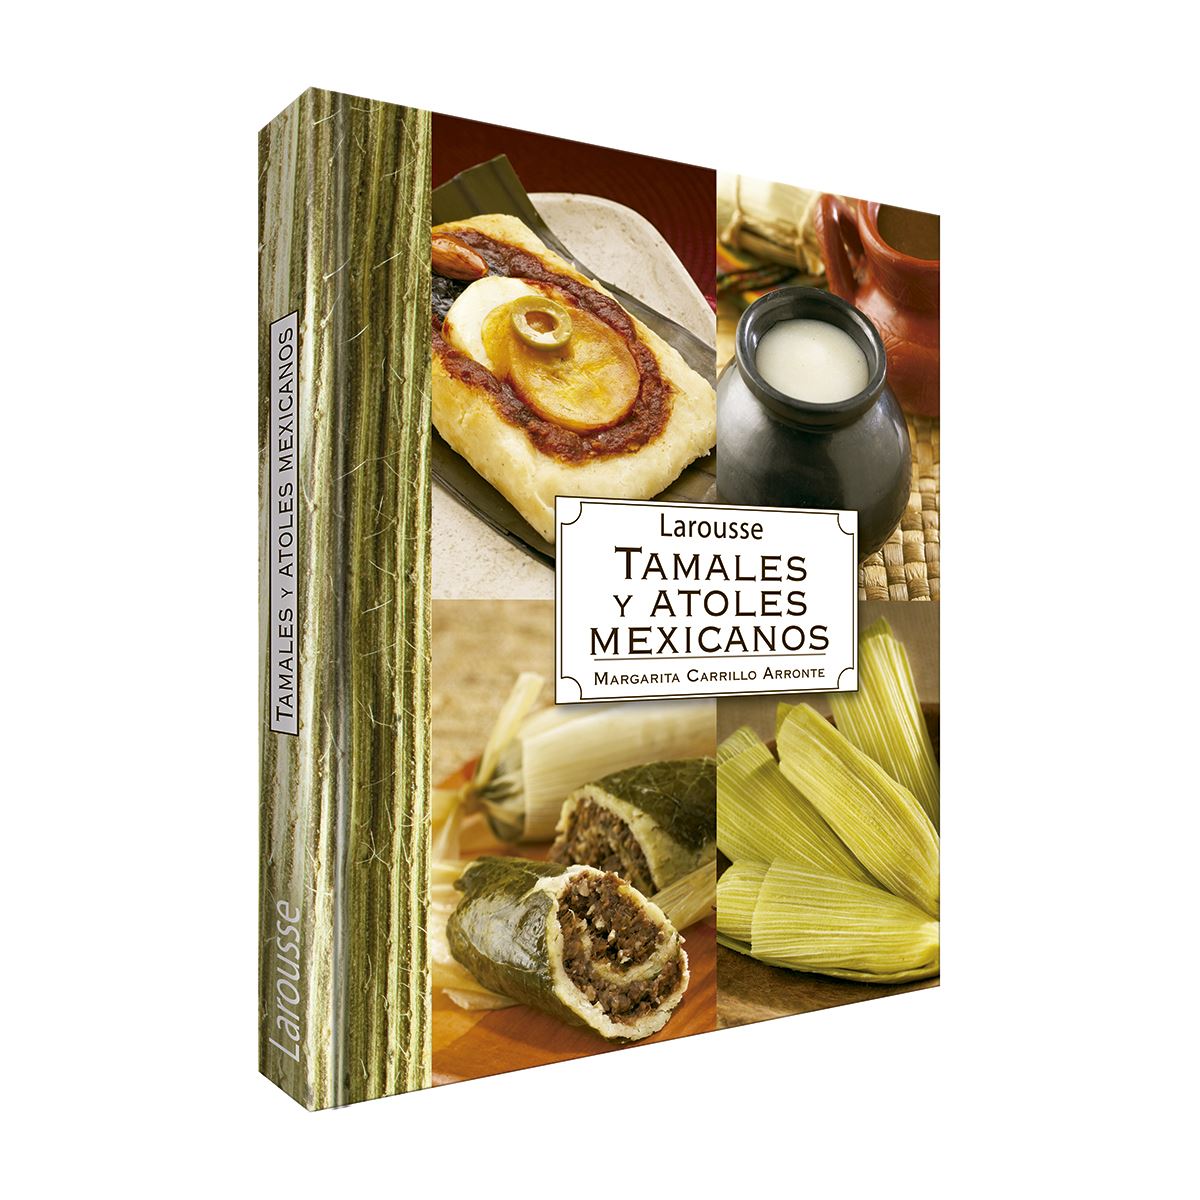 Tamales y atoles